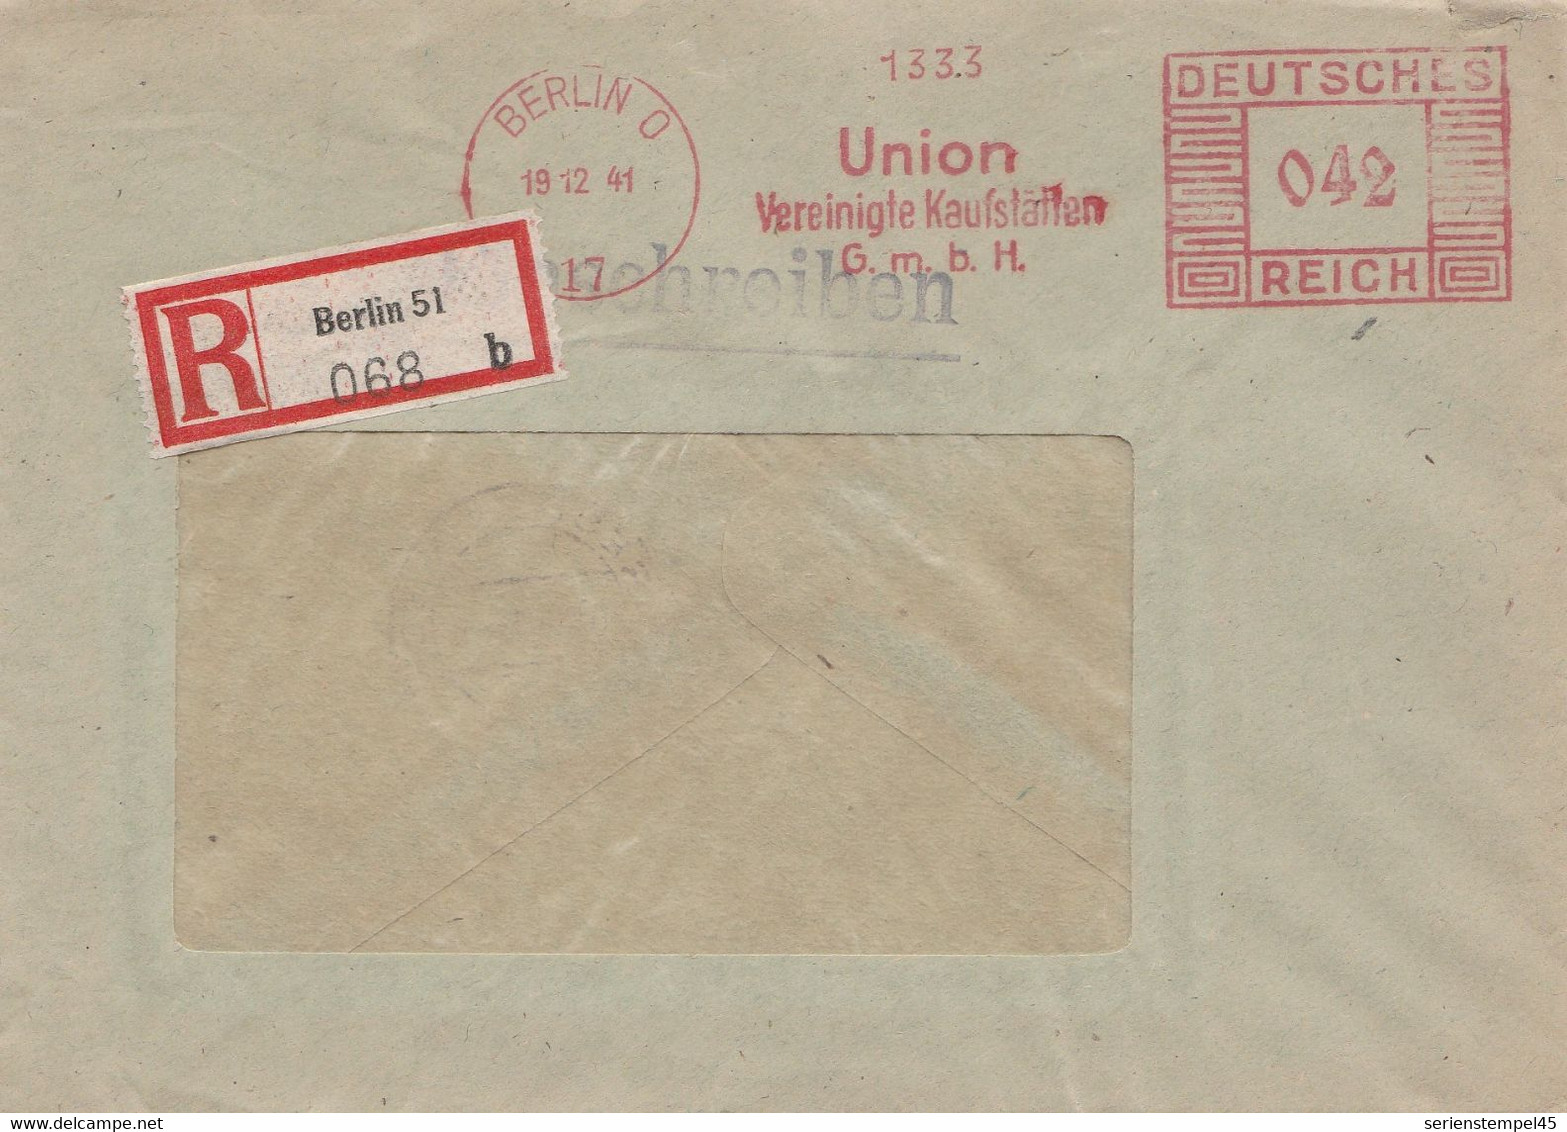 Deutsches Reich Einschreibe Brief Mit Freistempel Berlin 0 17 1941 Union Vereinigte Kaufstätten - Marcofilie - EMA (Print Machine)